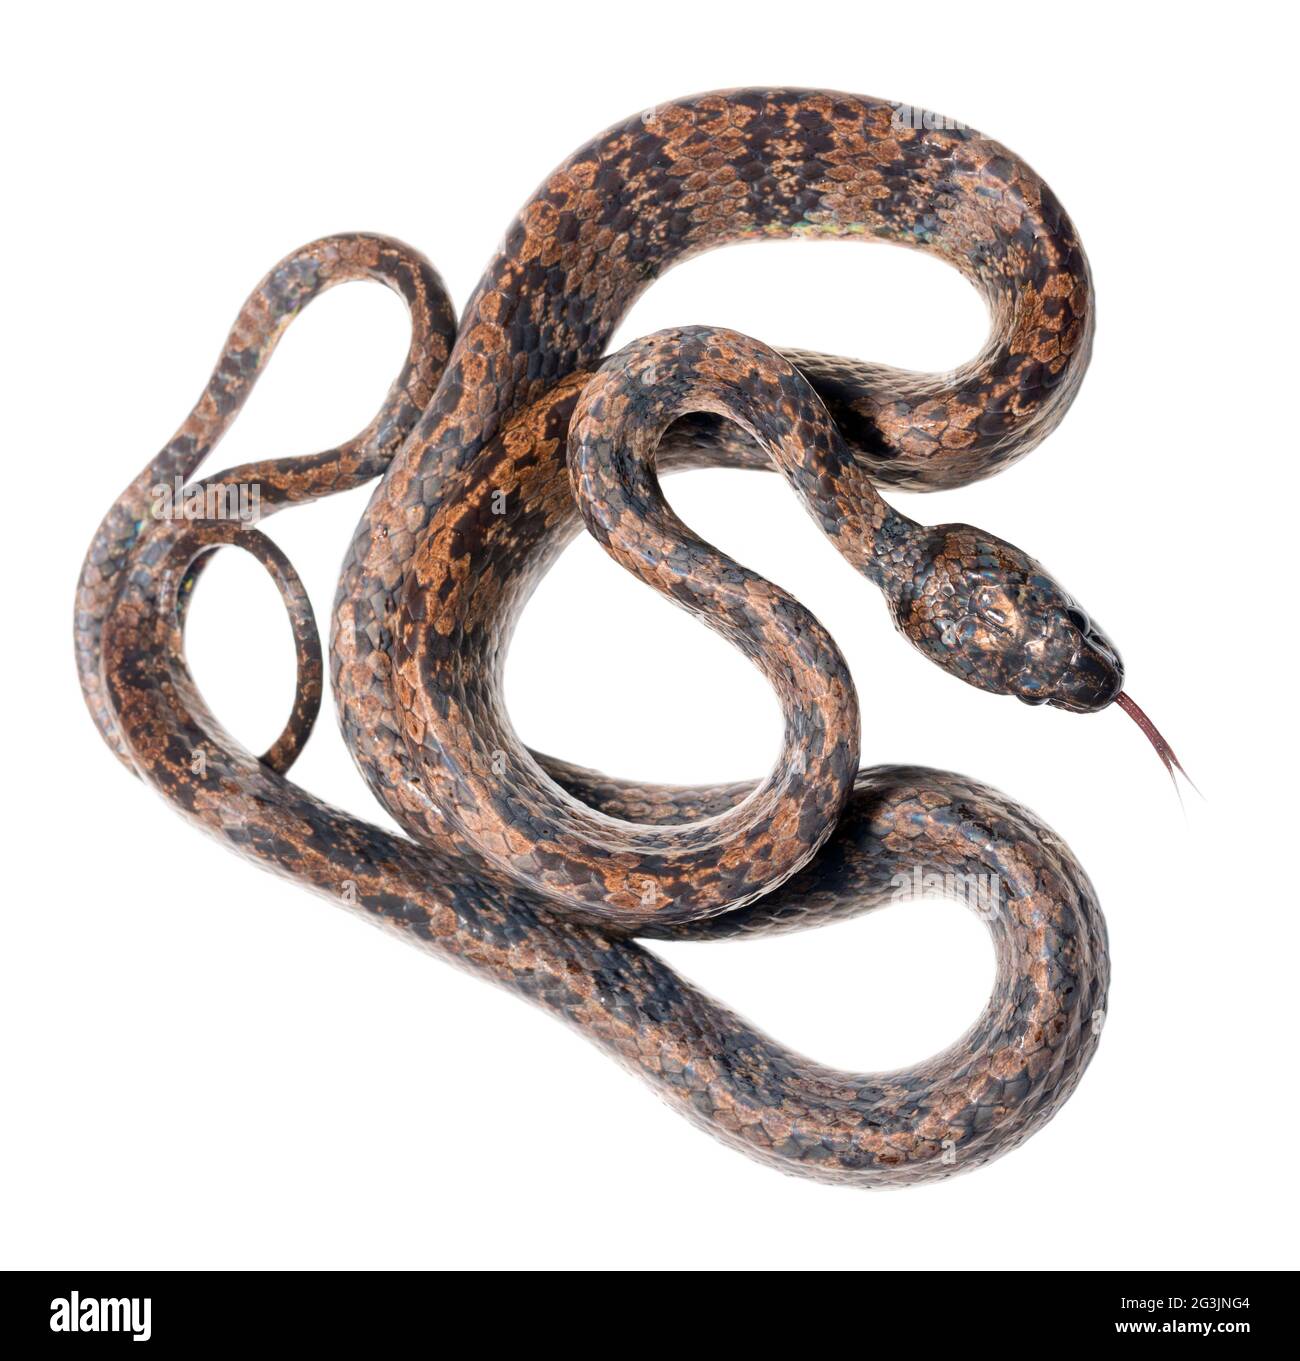 Elegant snail-eater snake (Dipsas elegans) from montane rainforest, Imbabura province, western Ecuador Stock Photo